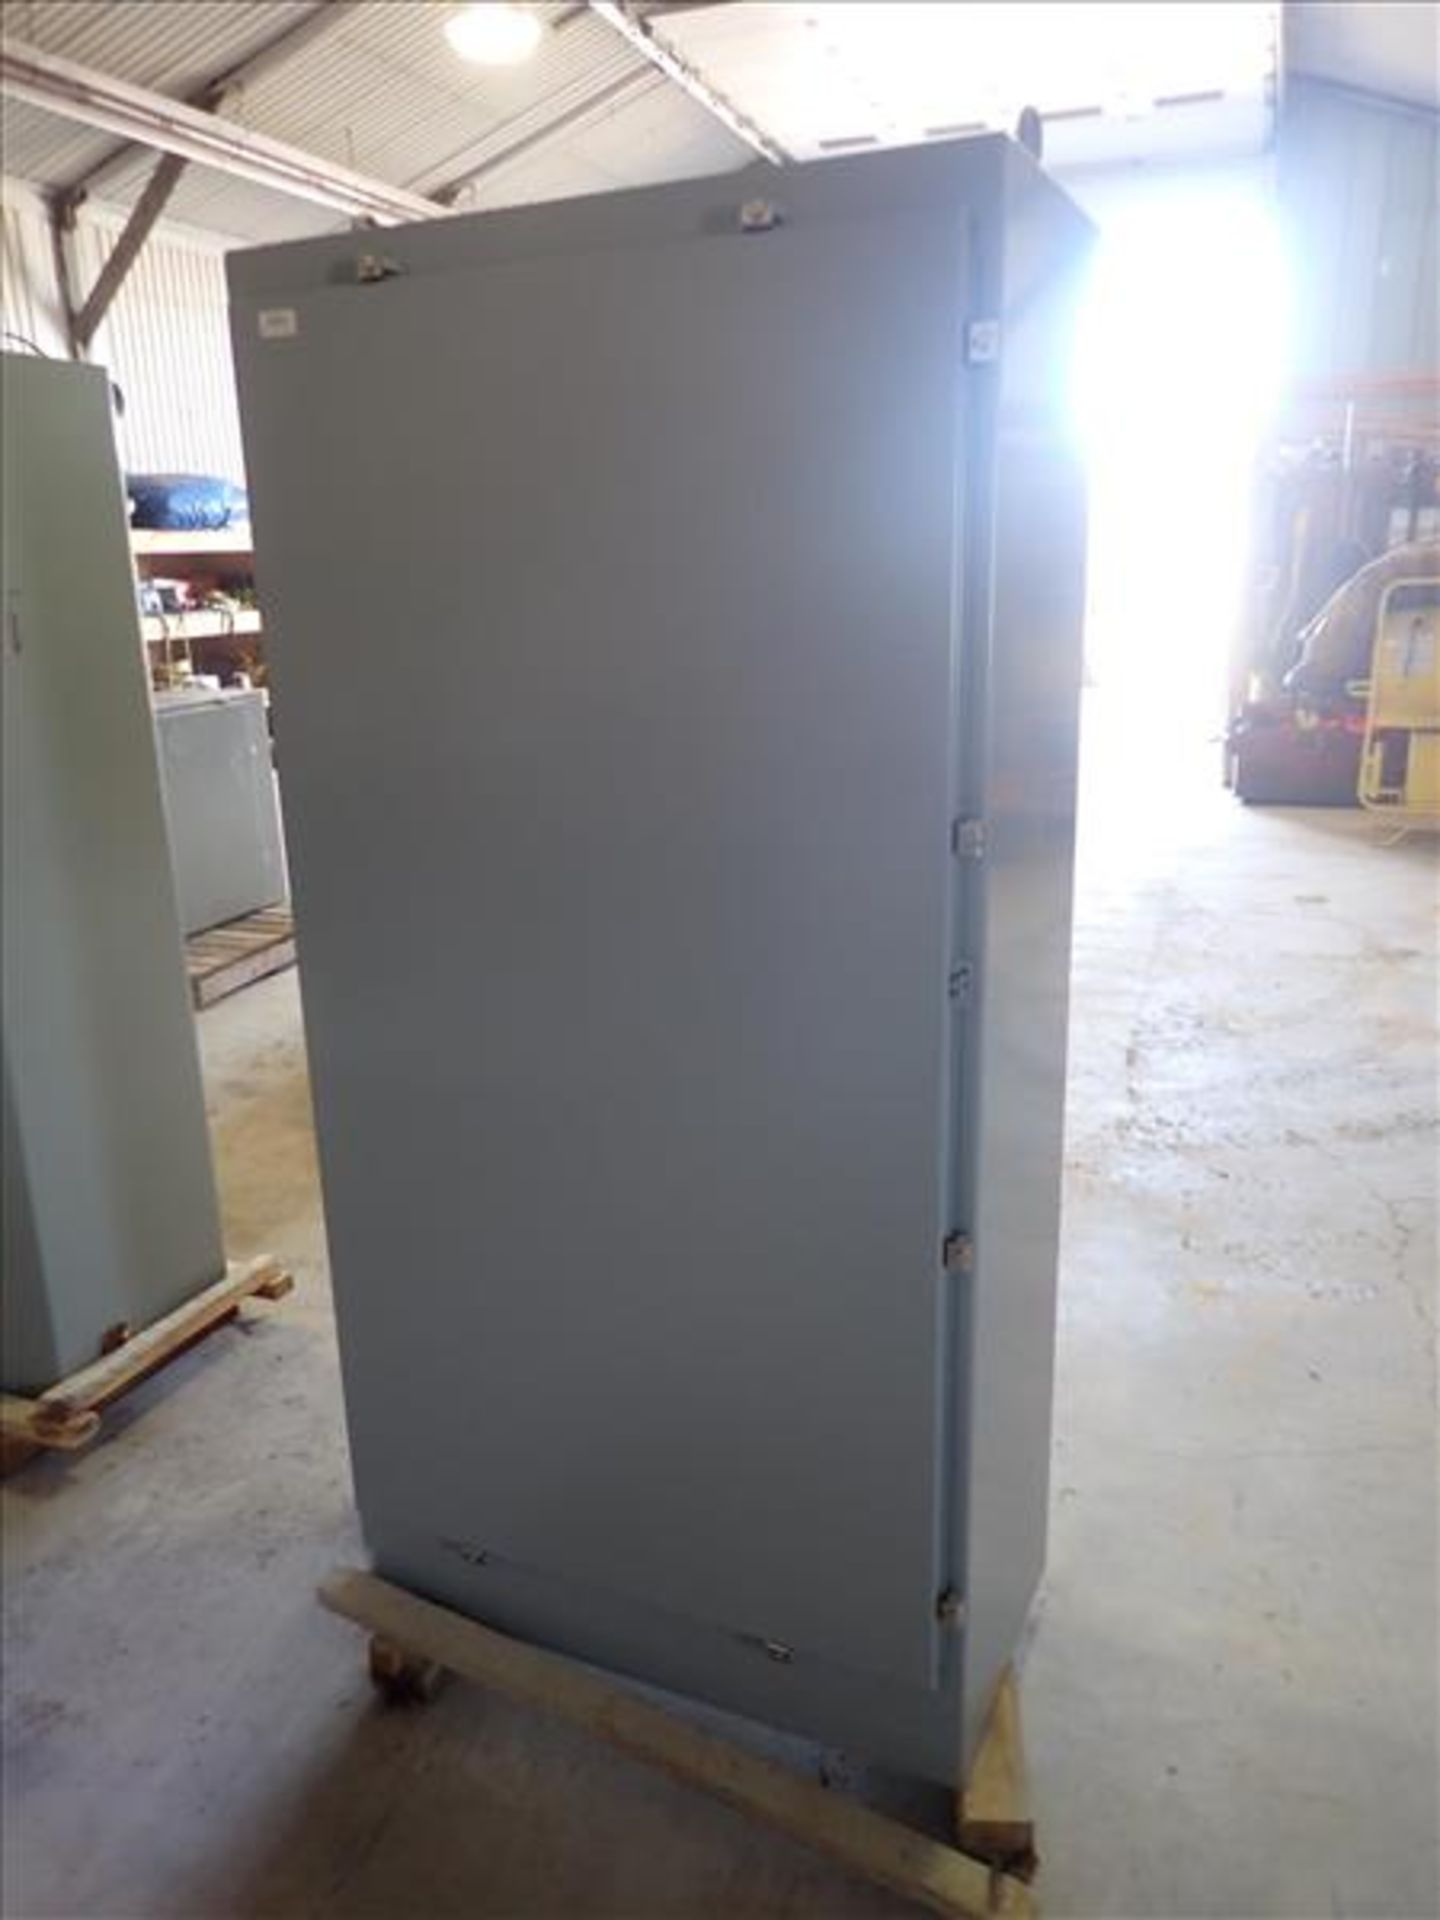 (NEW) Electrical Cabinet (Tag No. 4291) [Sea Container 762887-1] {Location Hallnor}